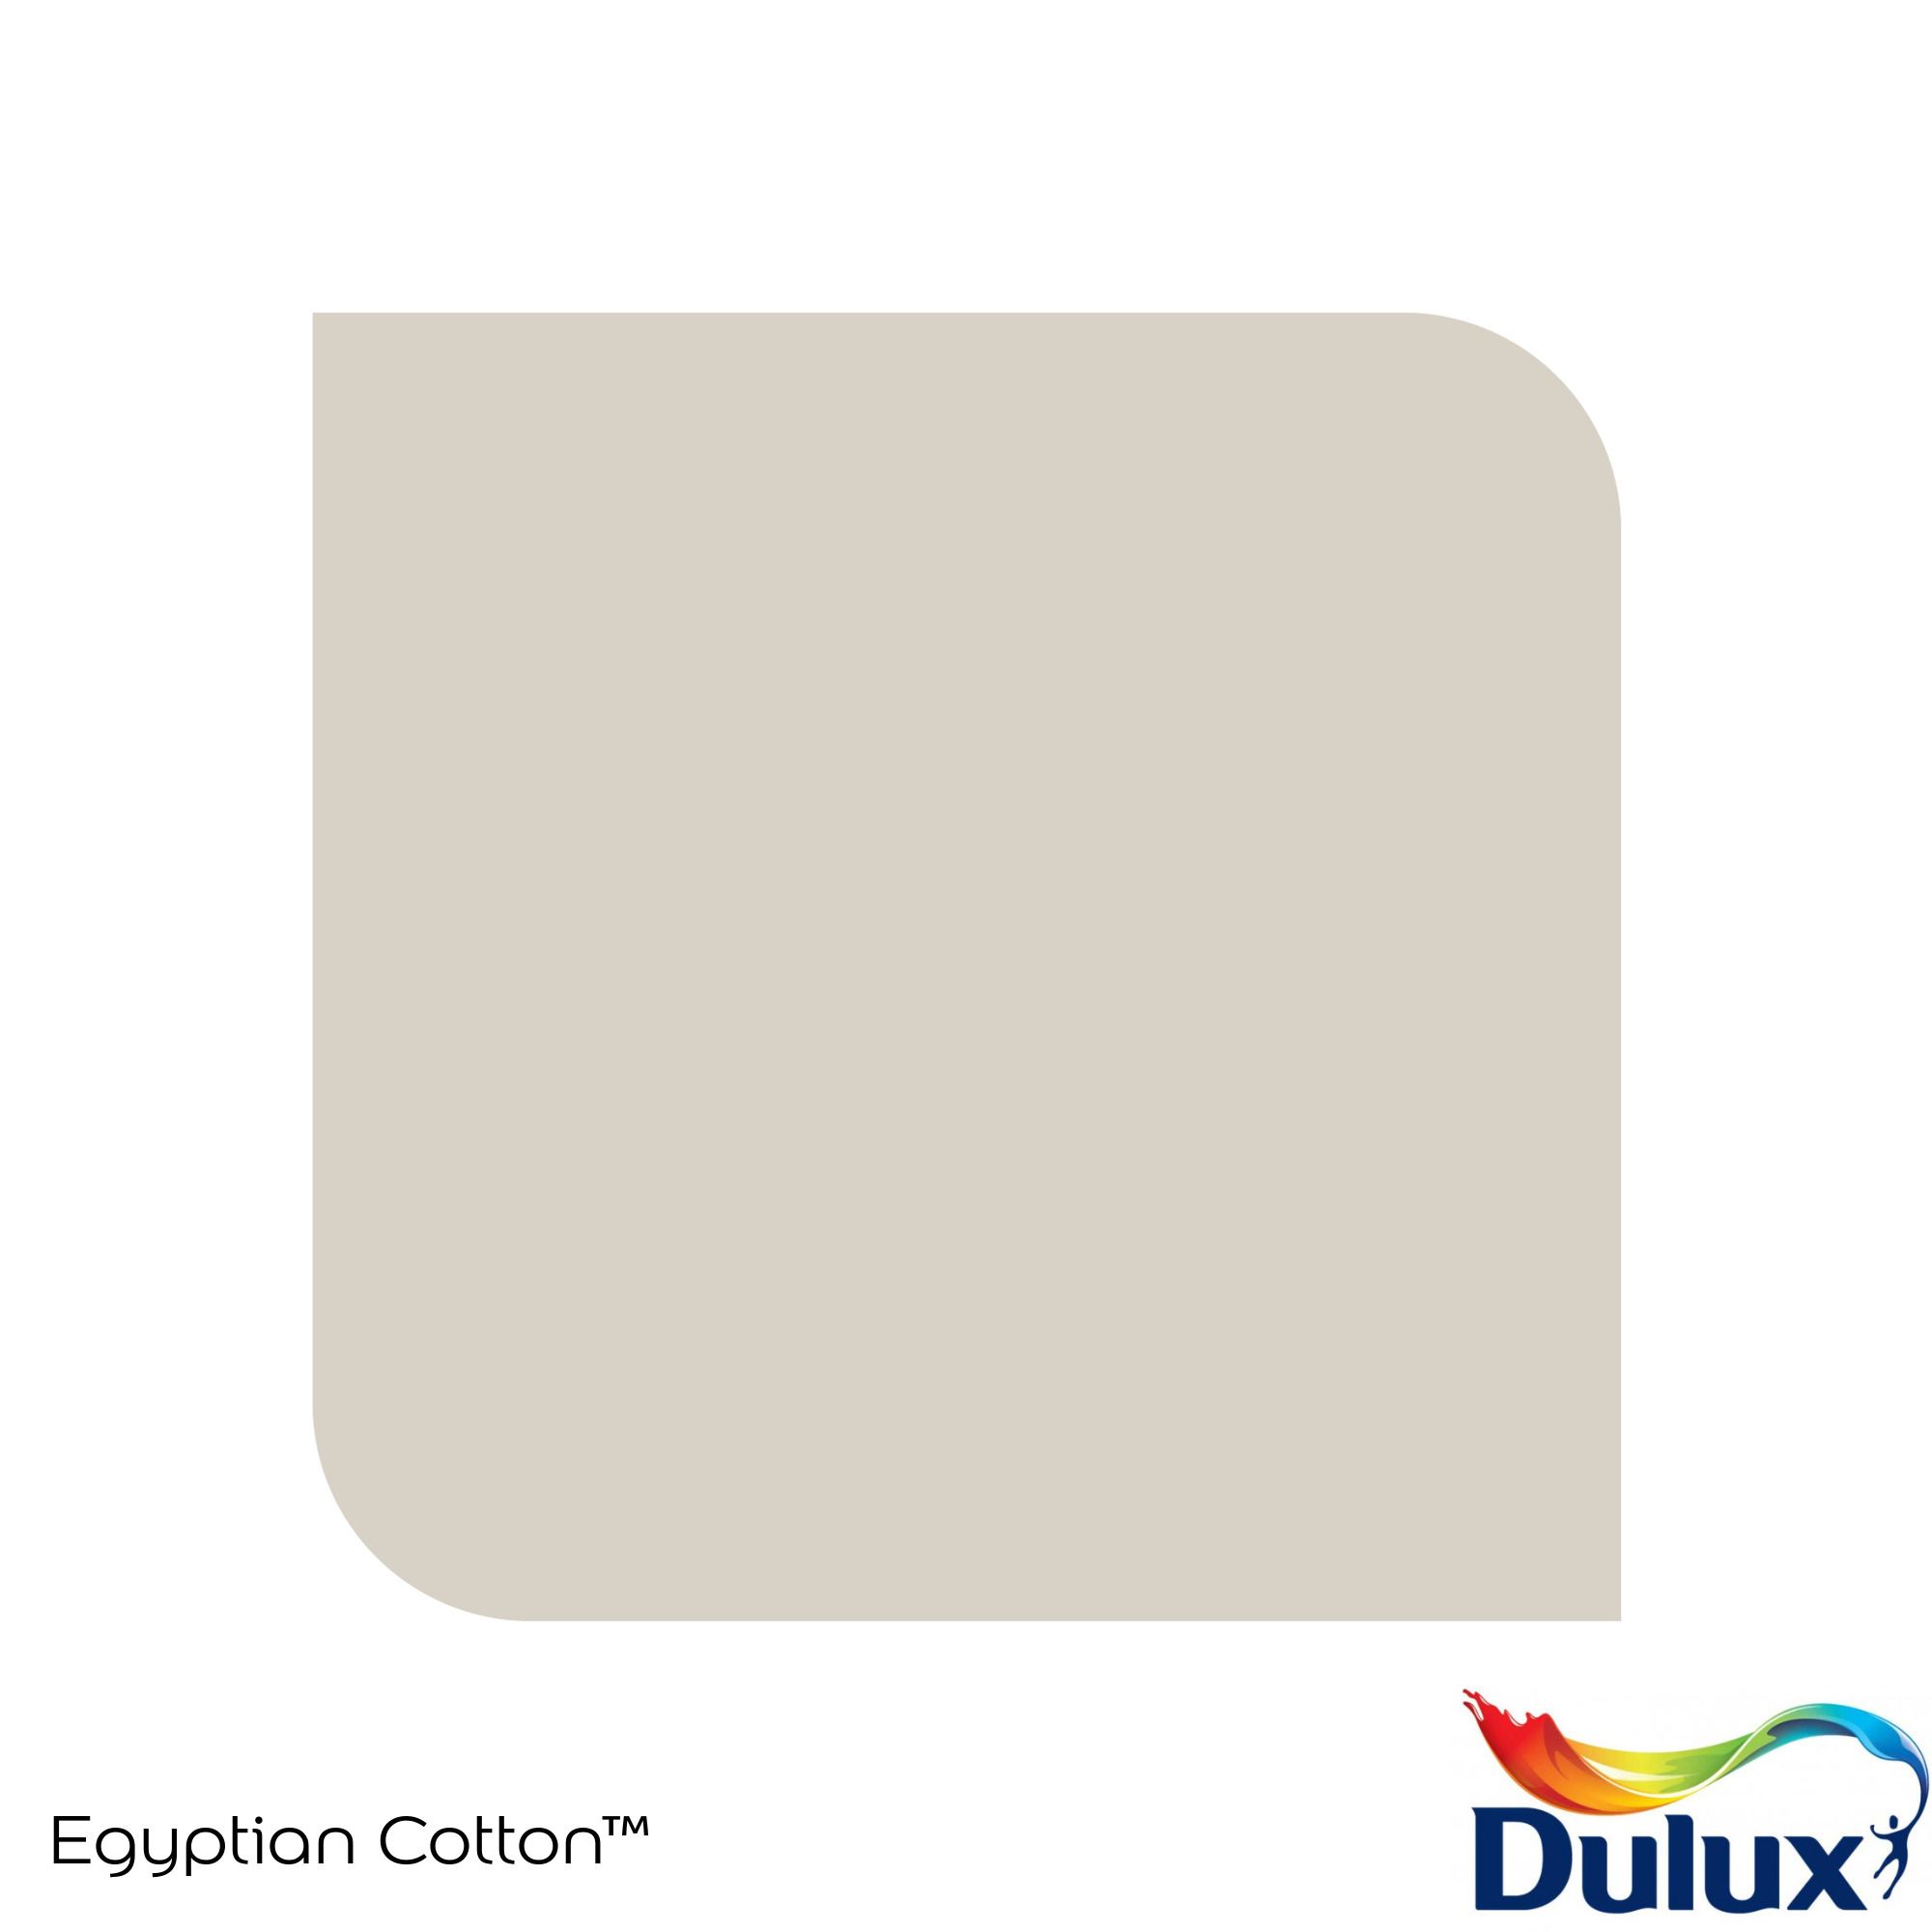 Dulux Standard Egyptian cotton Matt Emulsion paint, 30ml Tester pot